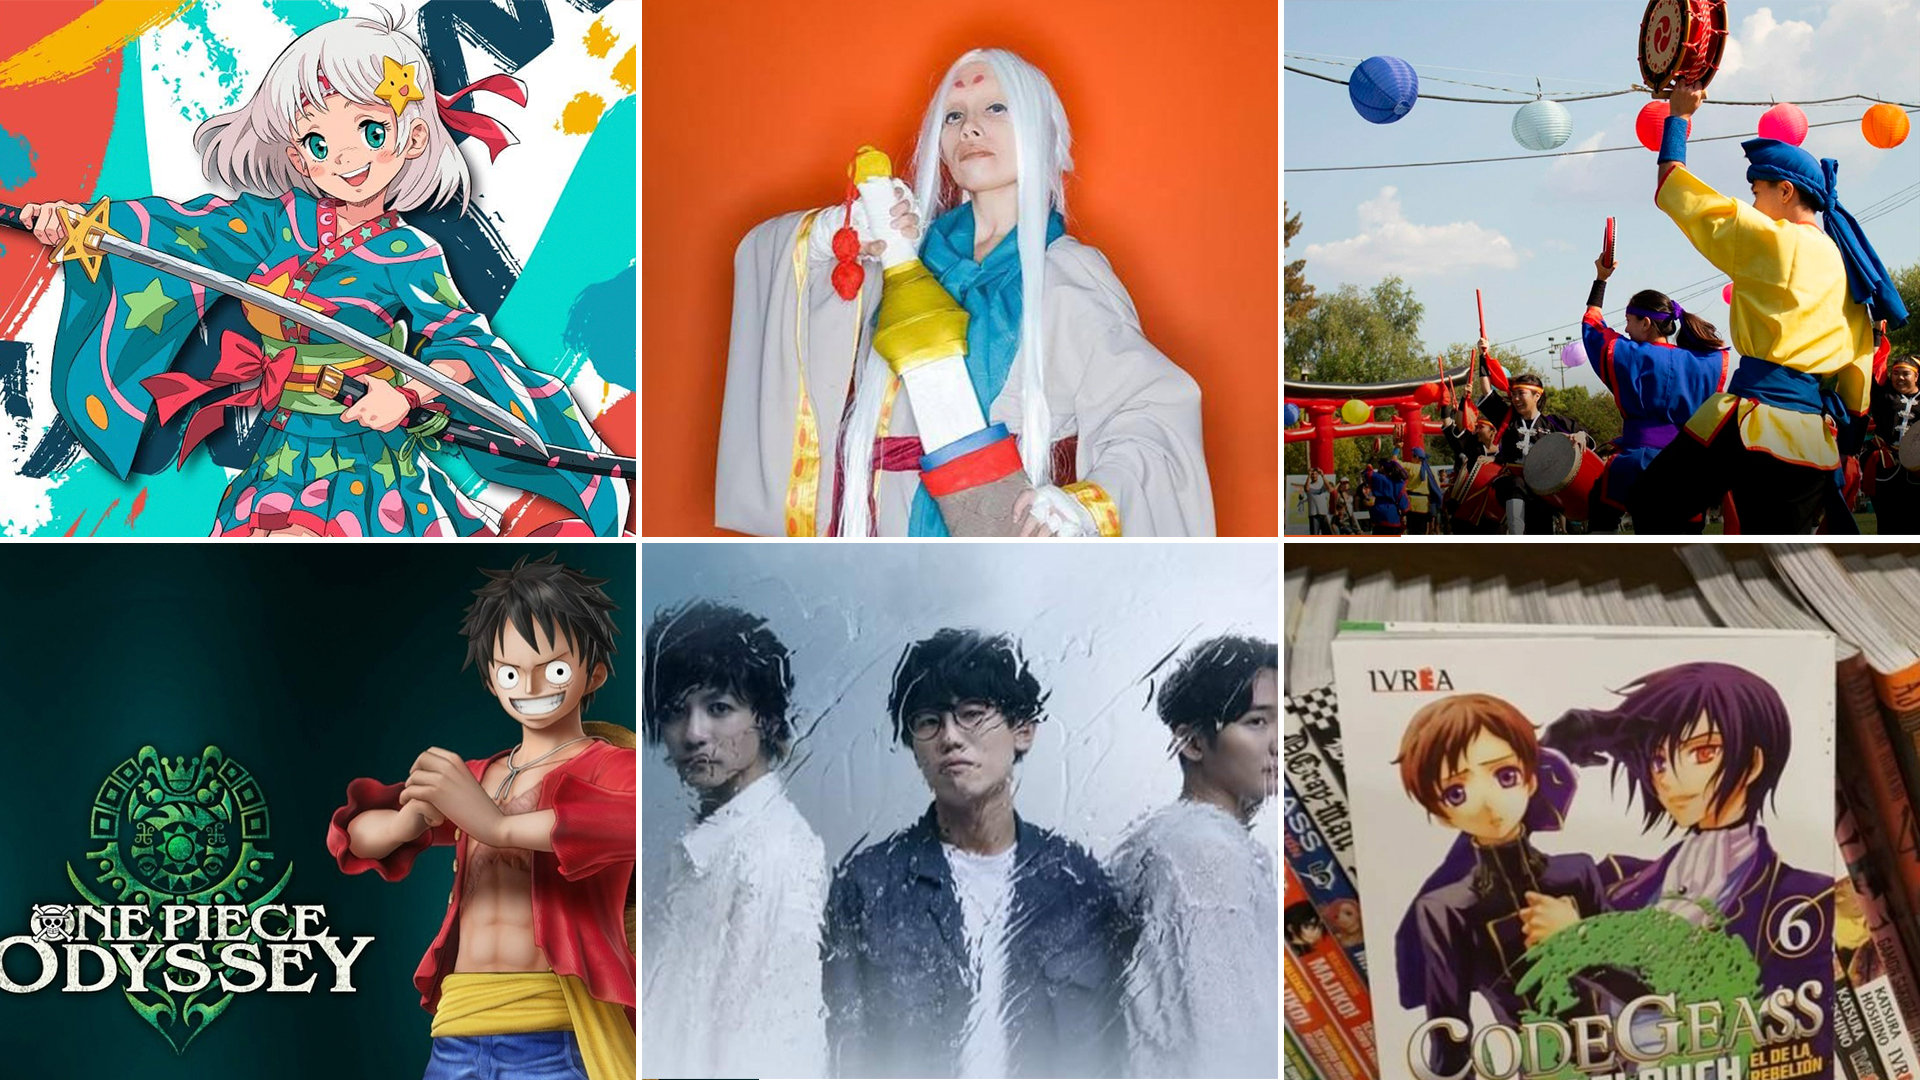 Anime-Con, la convención más grande sobre cultura pop japonesa 